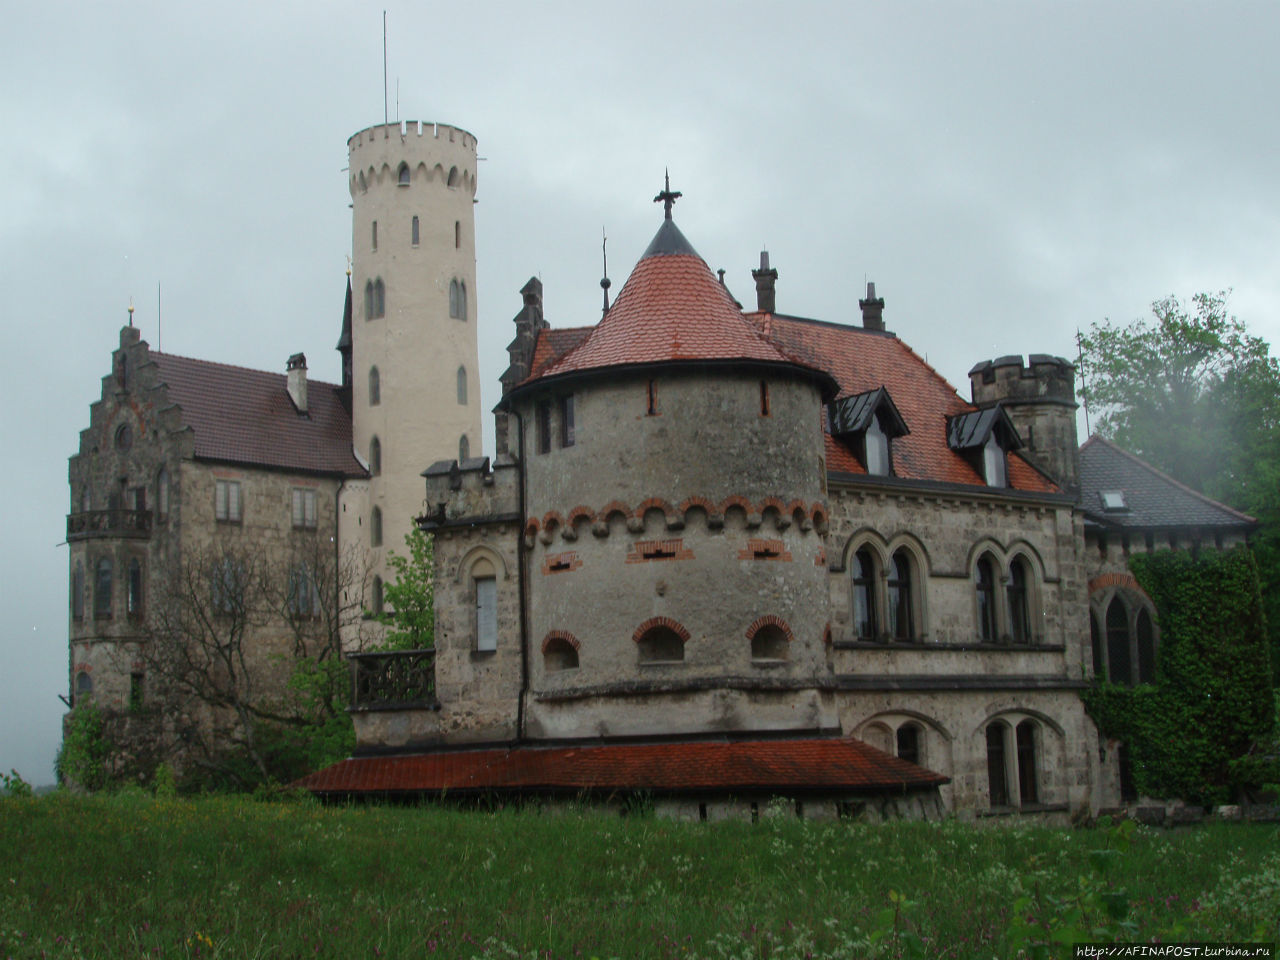 Замок Лихтенштейн — герой романа Гауфа Ройтлинген, Германия